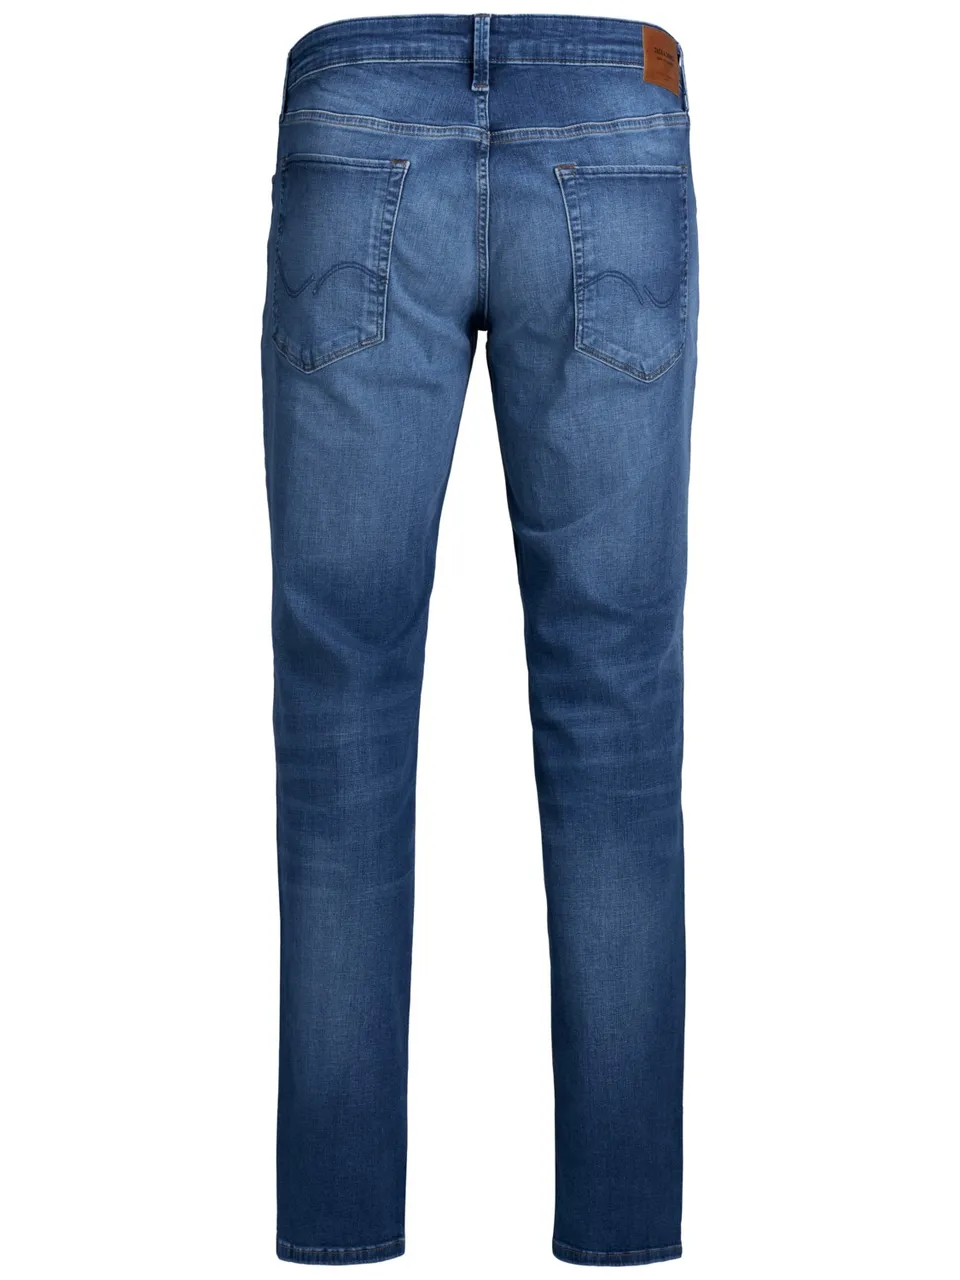 Jack & Jones Herren Jeans JJITIM JJICON JJ 357 50SPS - Slim Fit - Blau - Blue Denim in großen Größen